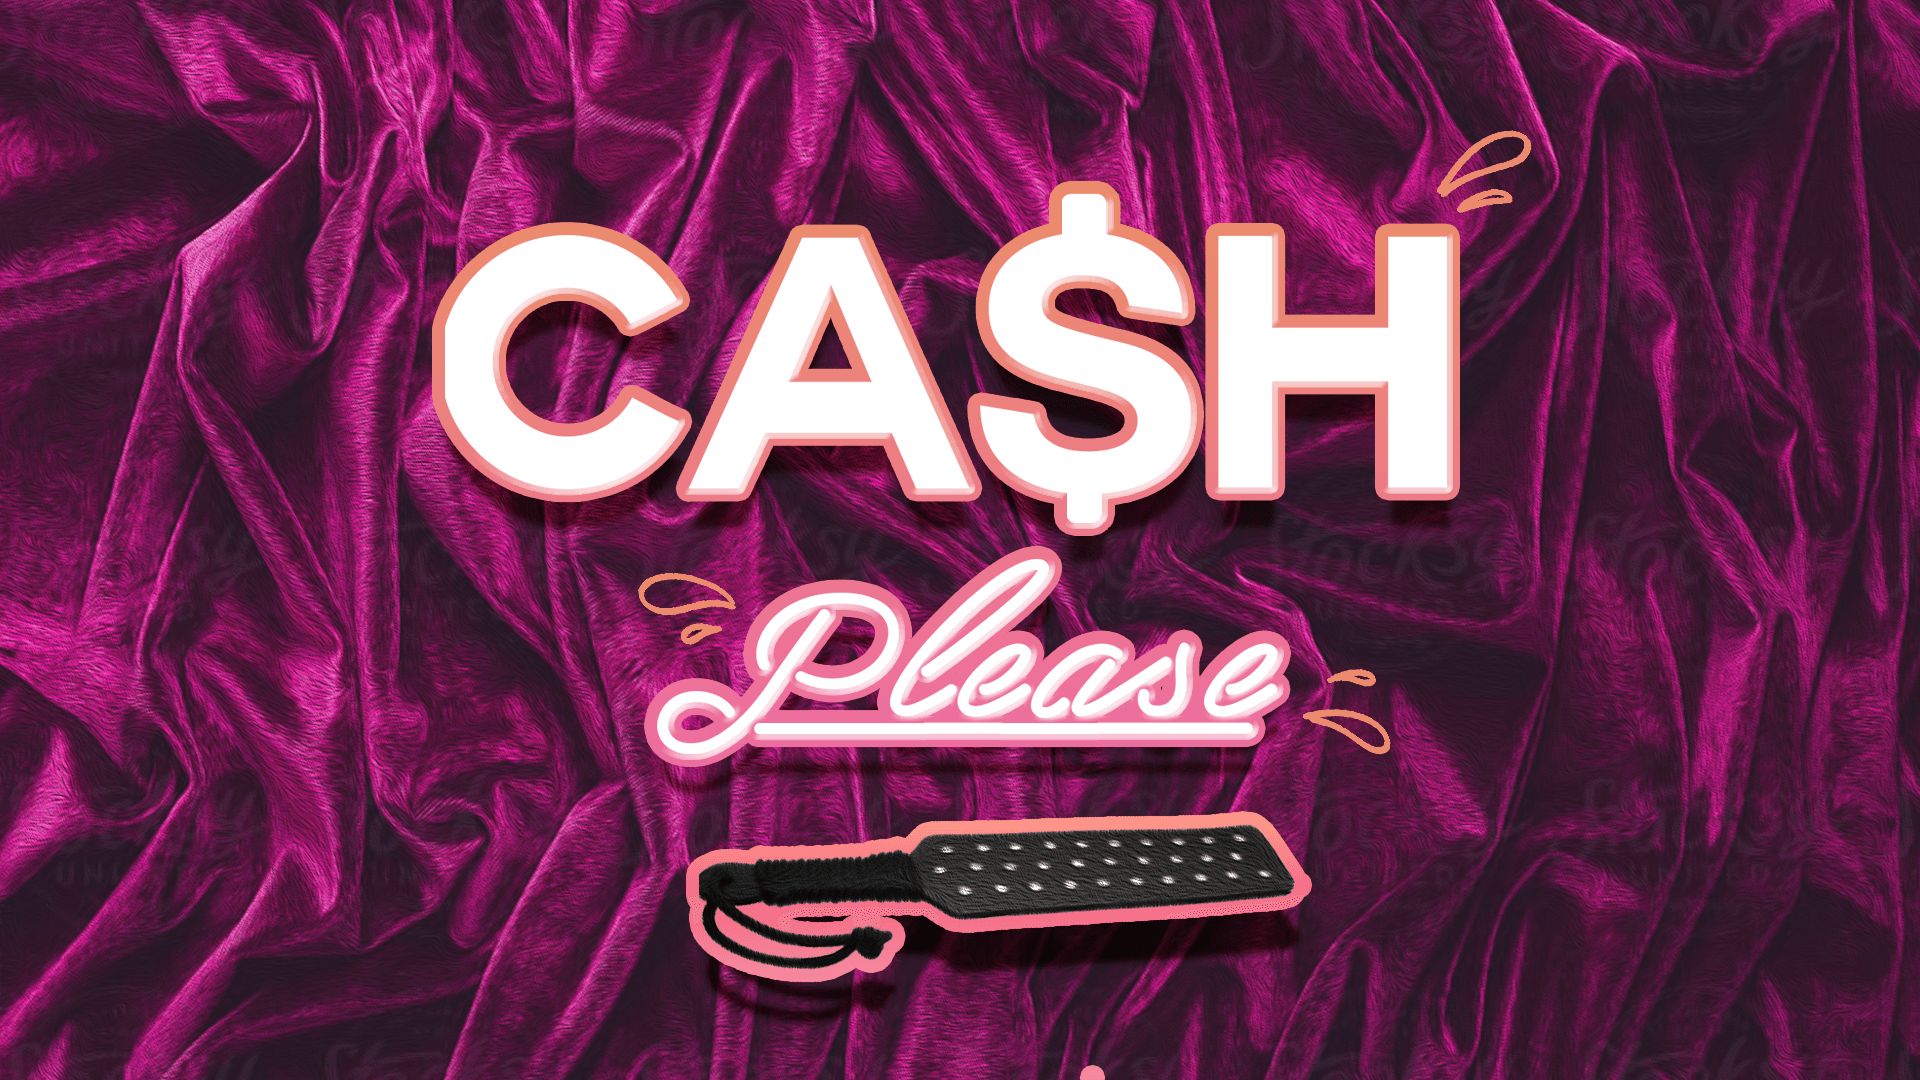 CASH please